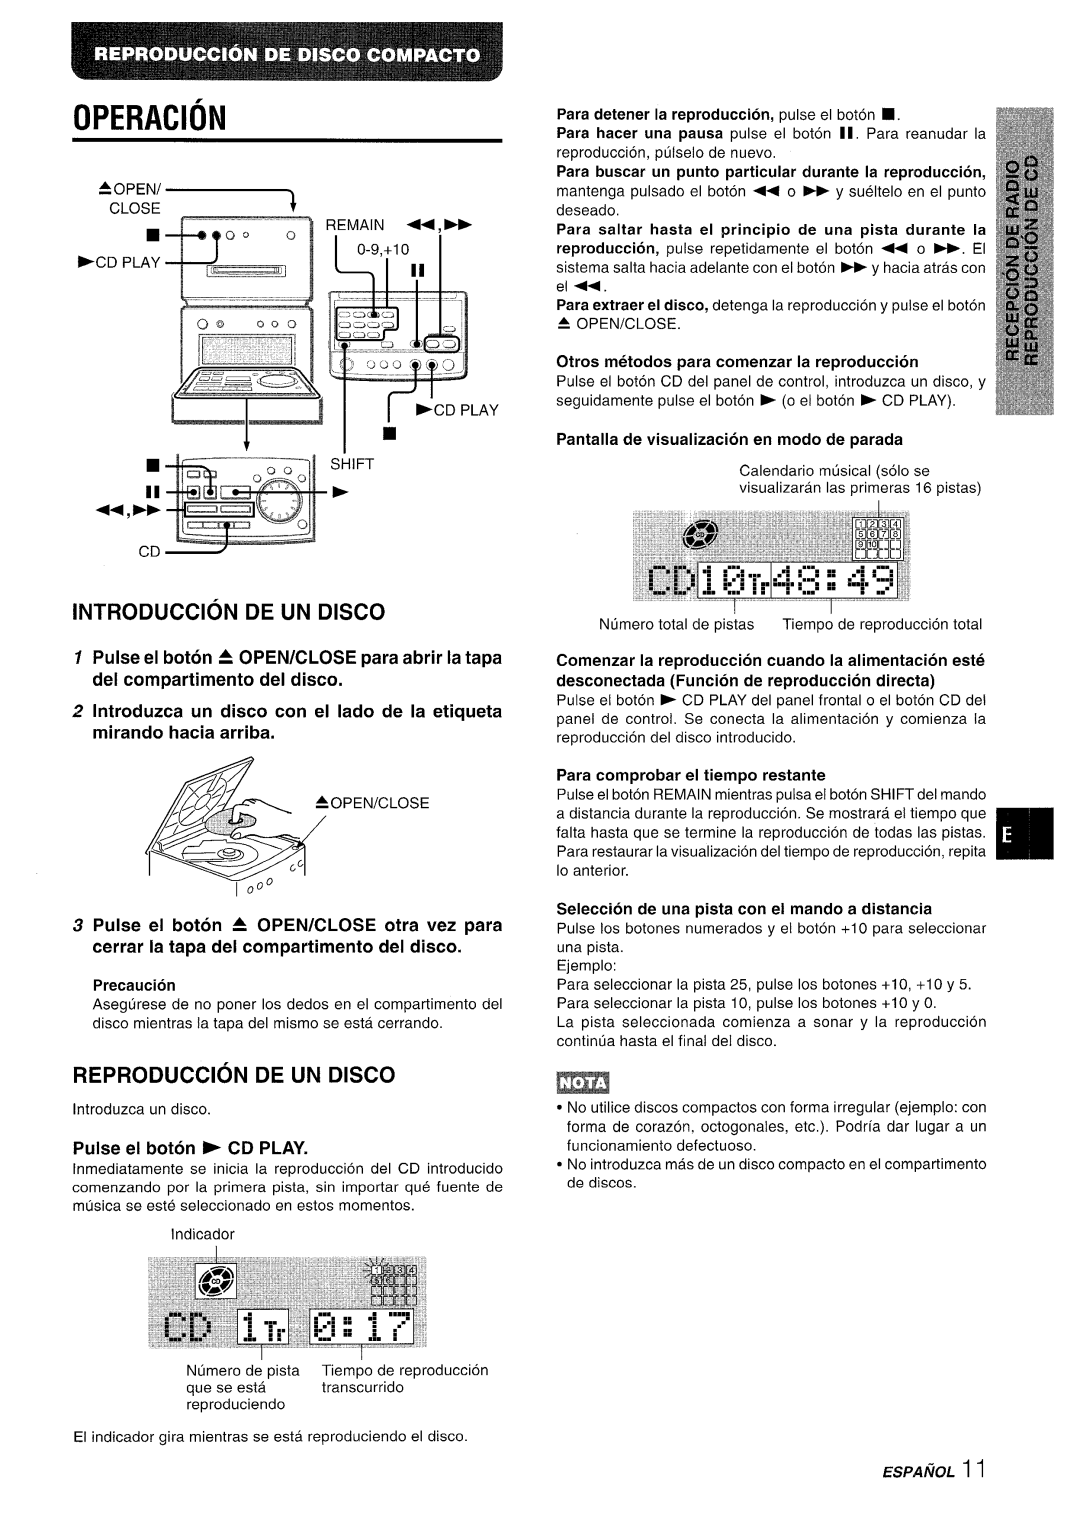 Aiwa XR-MD95 Operacion, Introduction De Un Disco, Reproduction De Un Disco, Precaution, Pulse el boton * CD PLAY, ESPA/iOL 